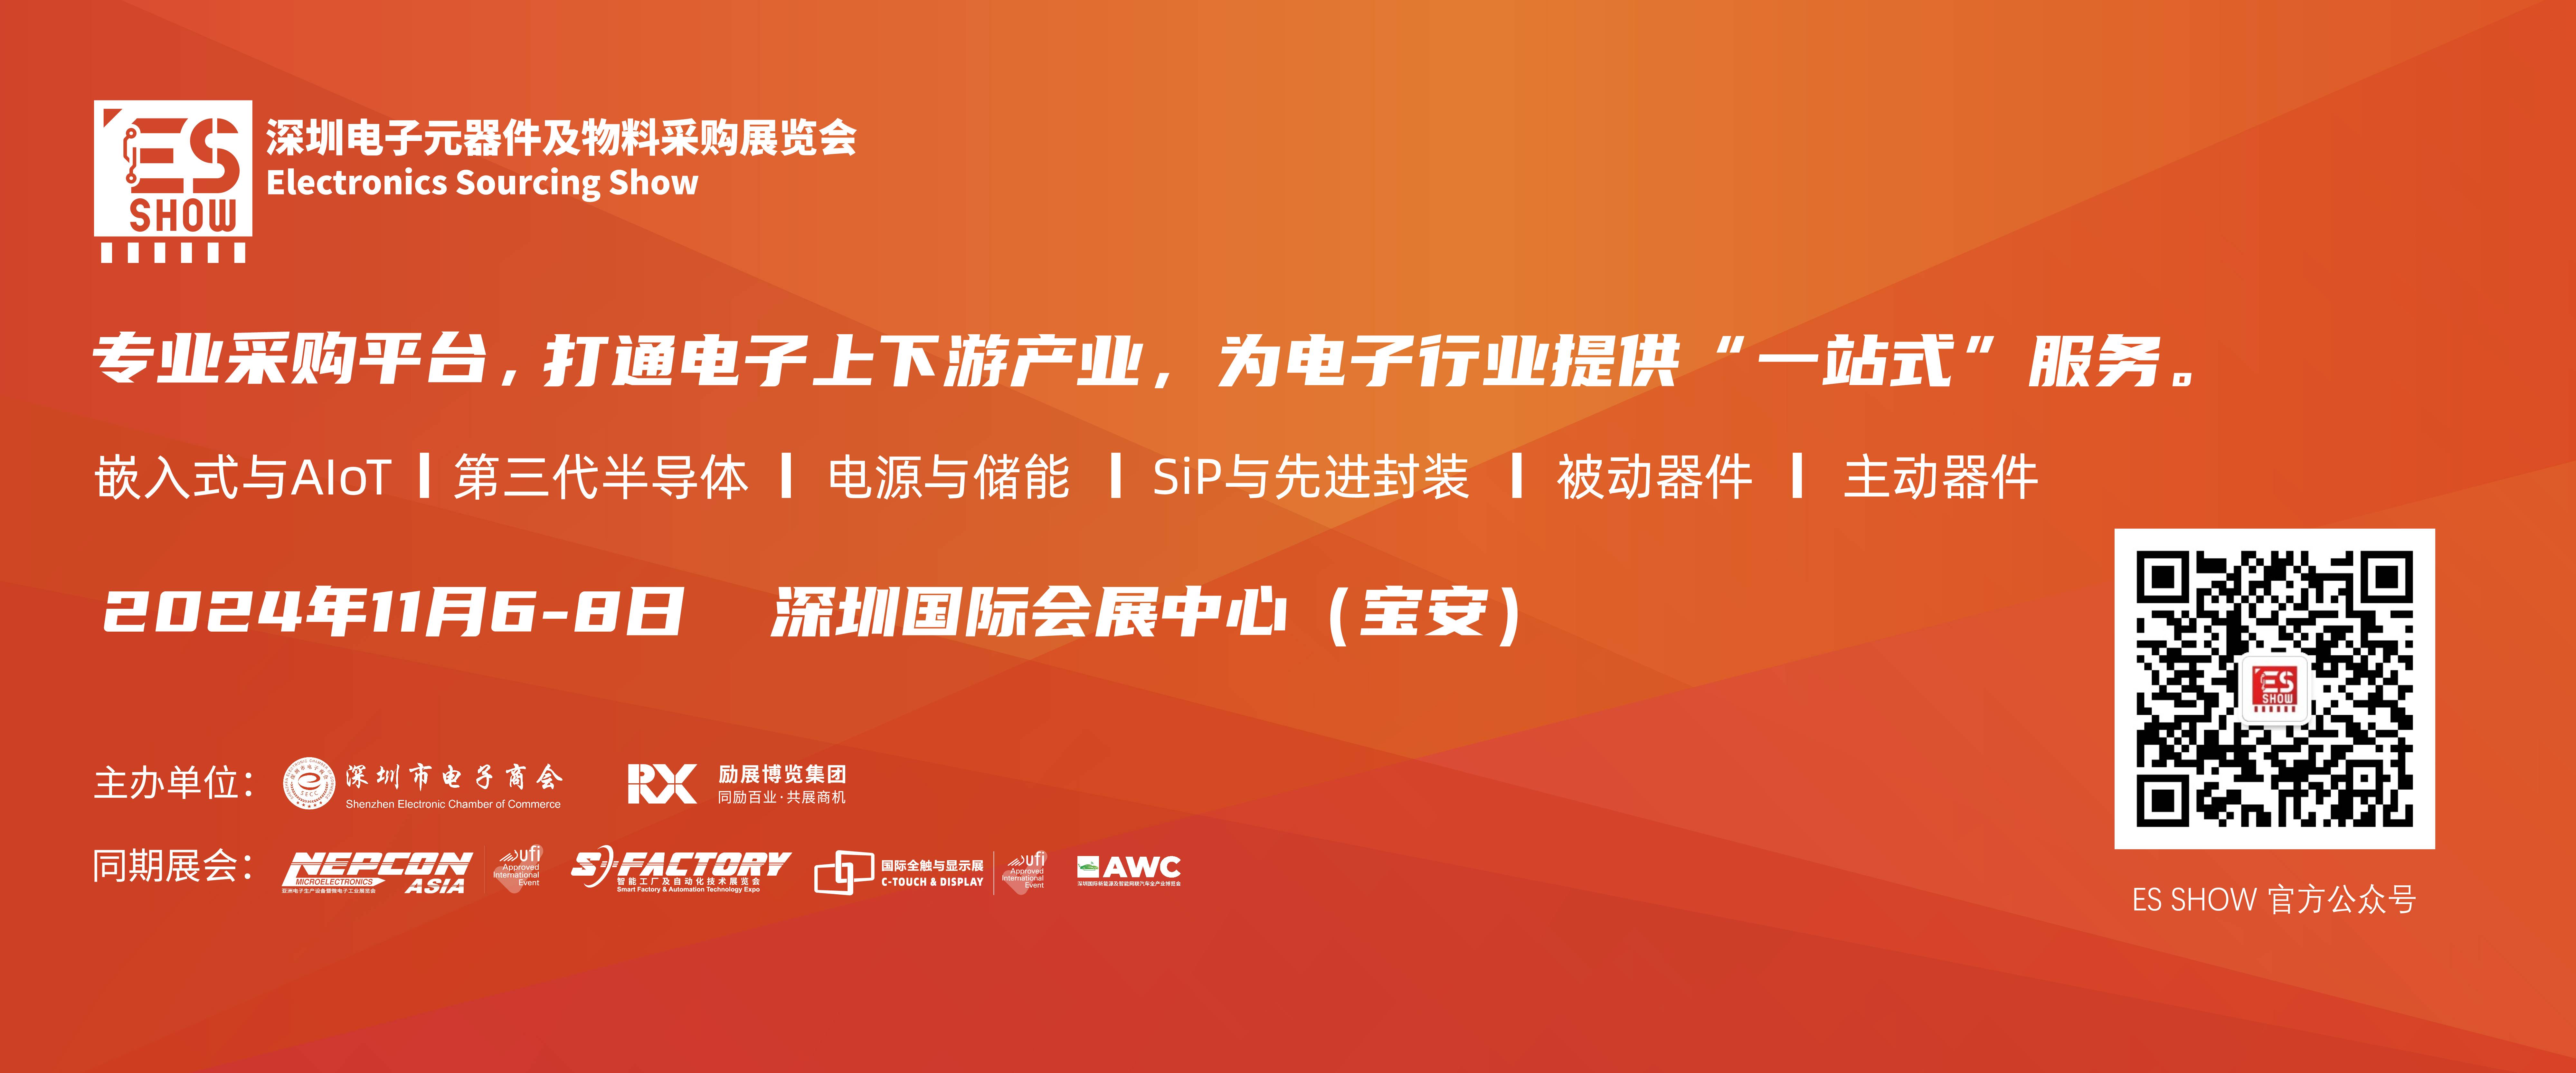 新能源汽车 深圳电子展 华南电子展 中国电子展 元器件展会